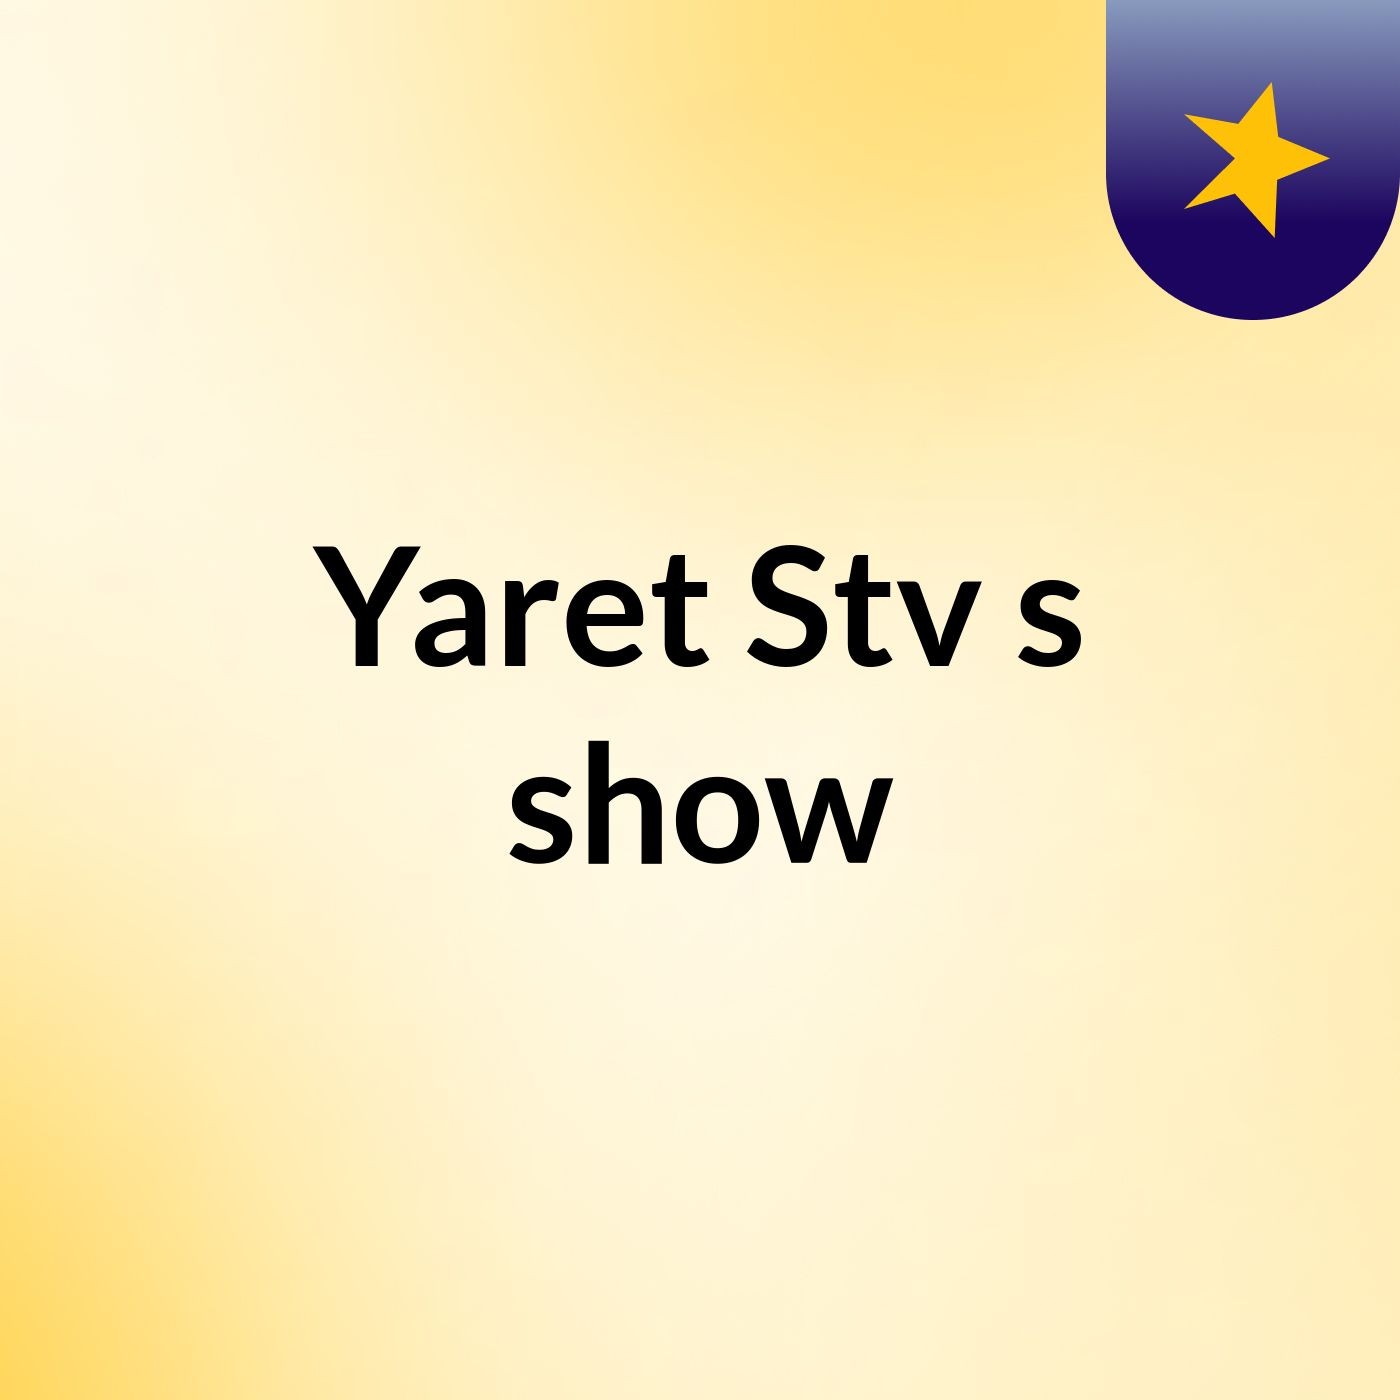 Yaret Stv's show